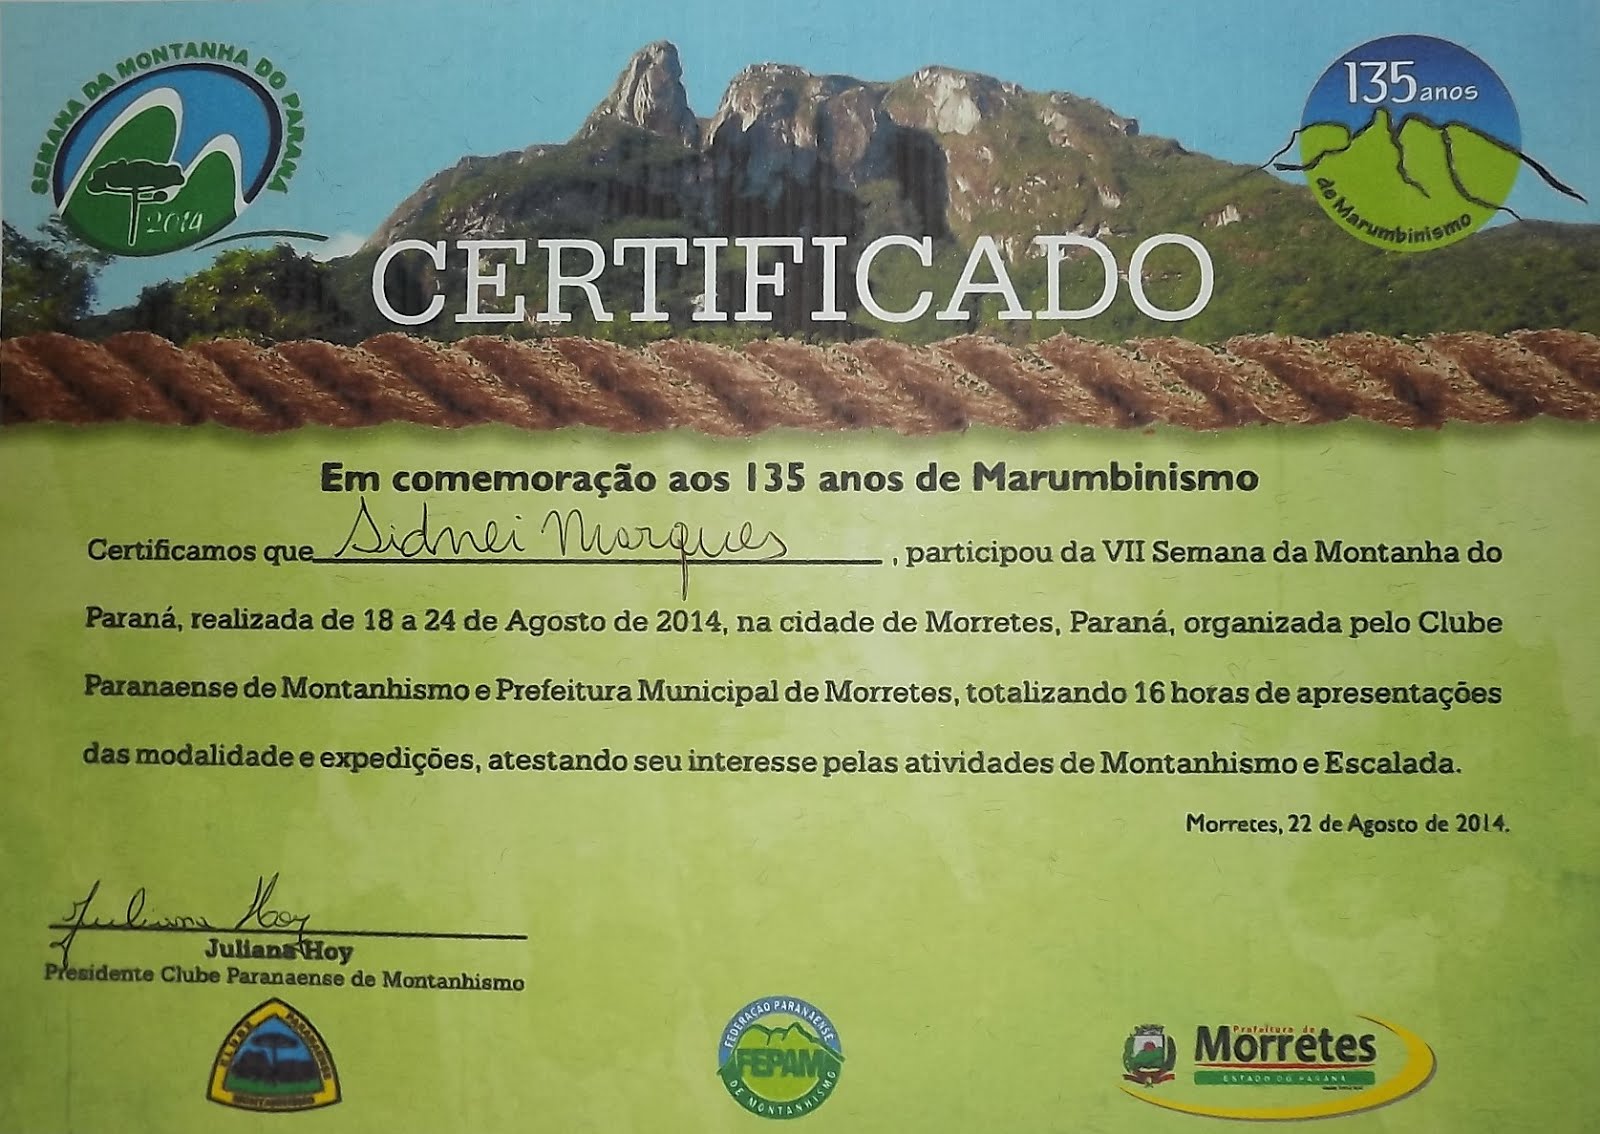 Certificado de Sidnei Marques